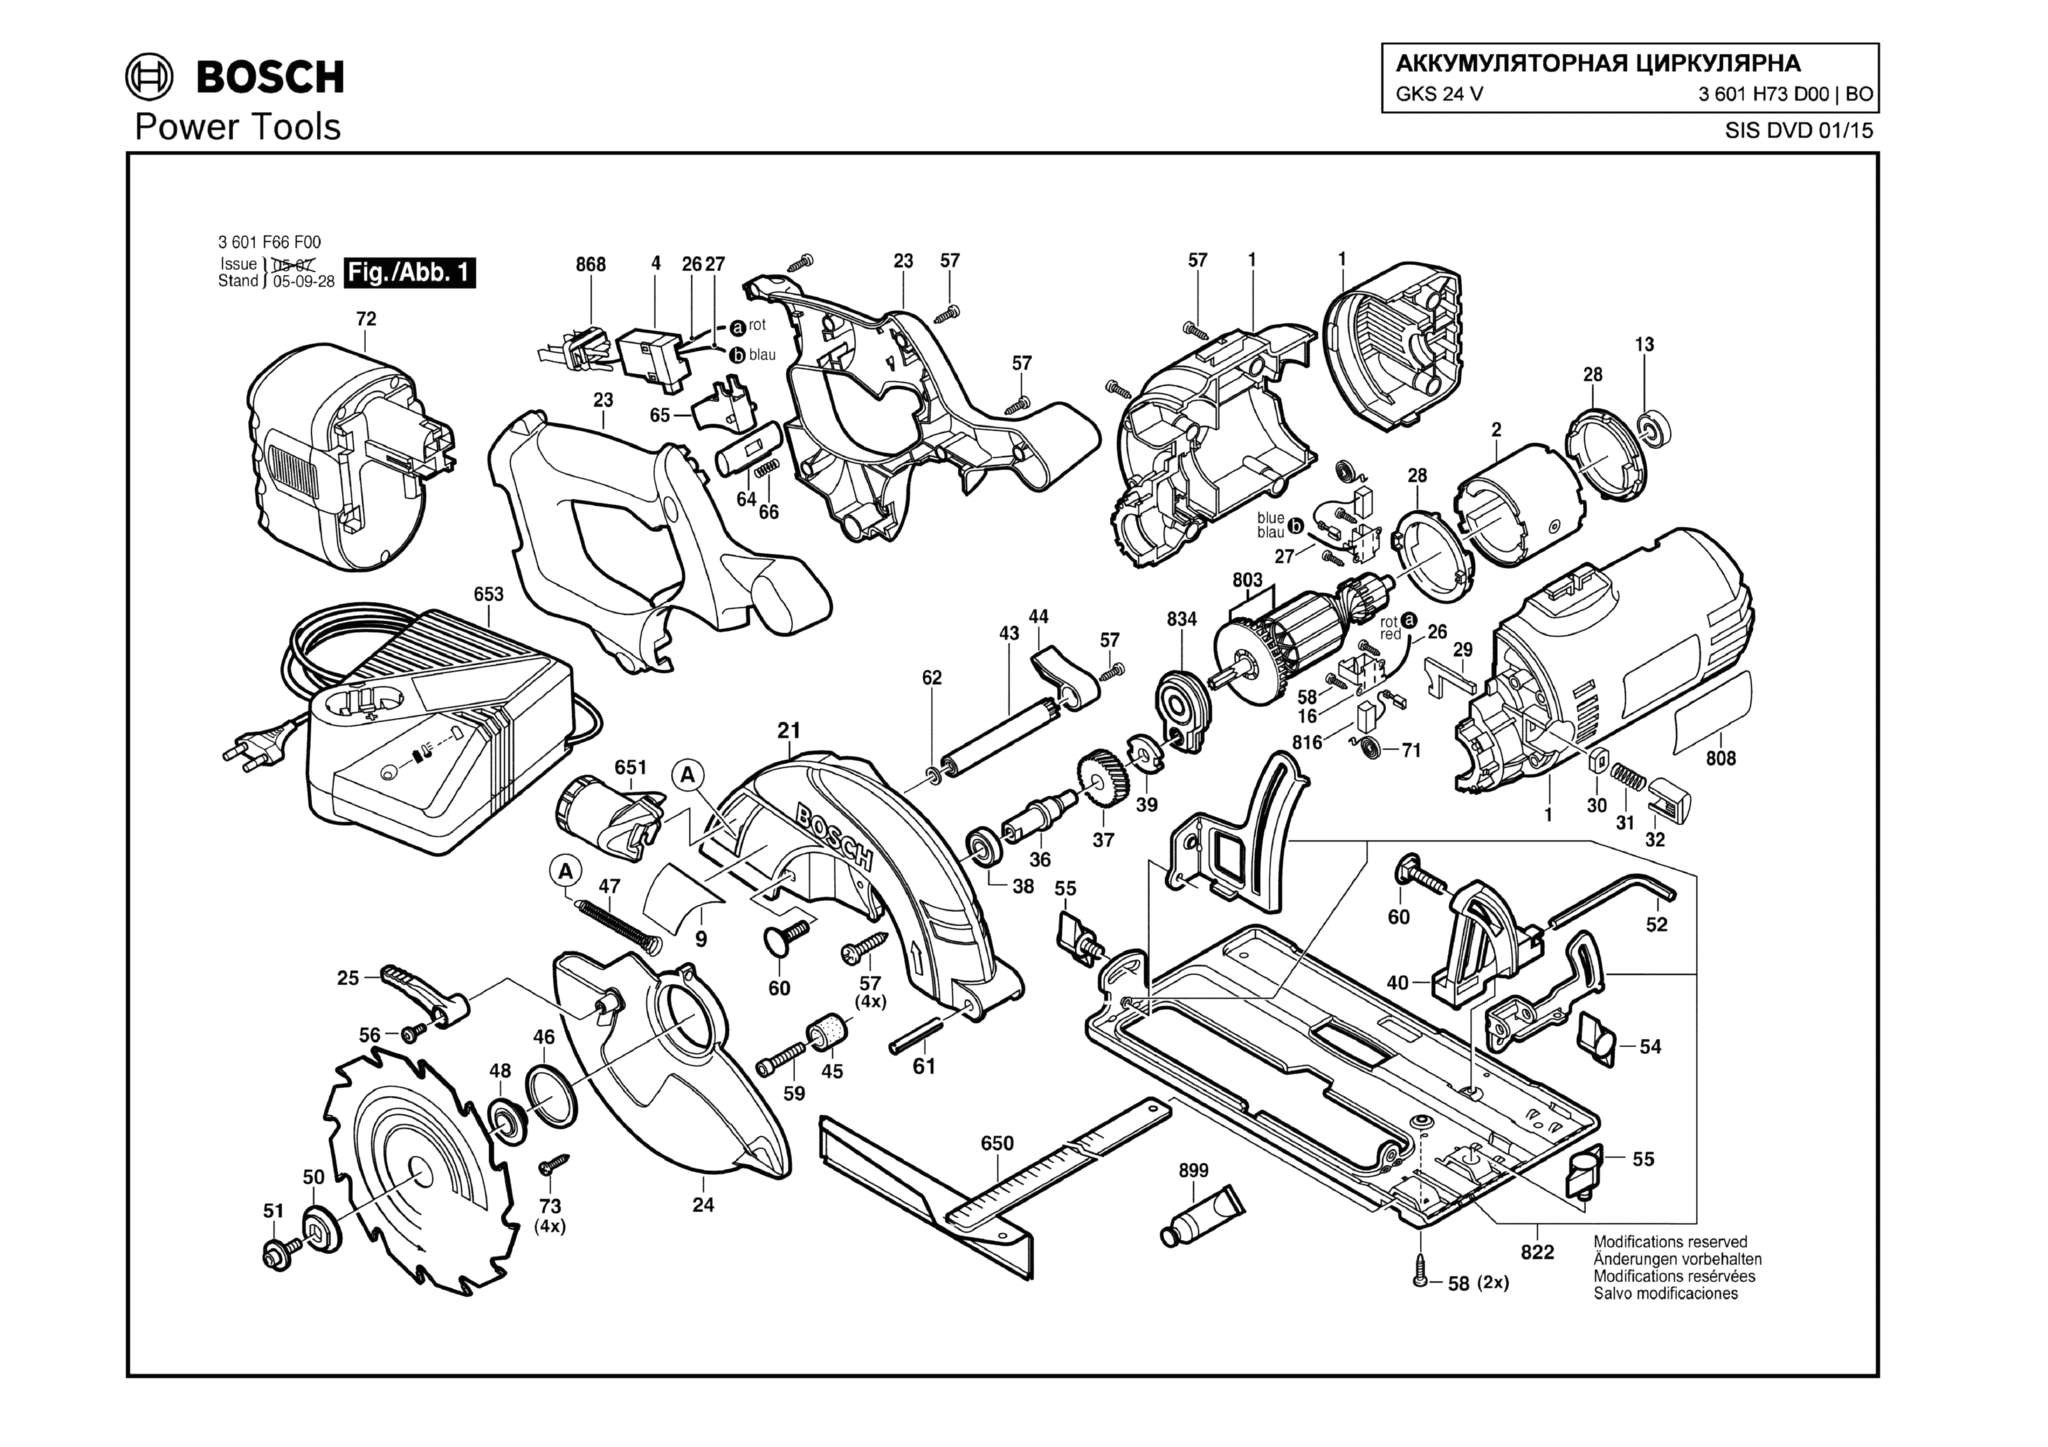 Запчасти, схема и деталировка Bosch GKS 24 V (ТИП 3601H73D00)